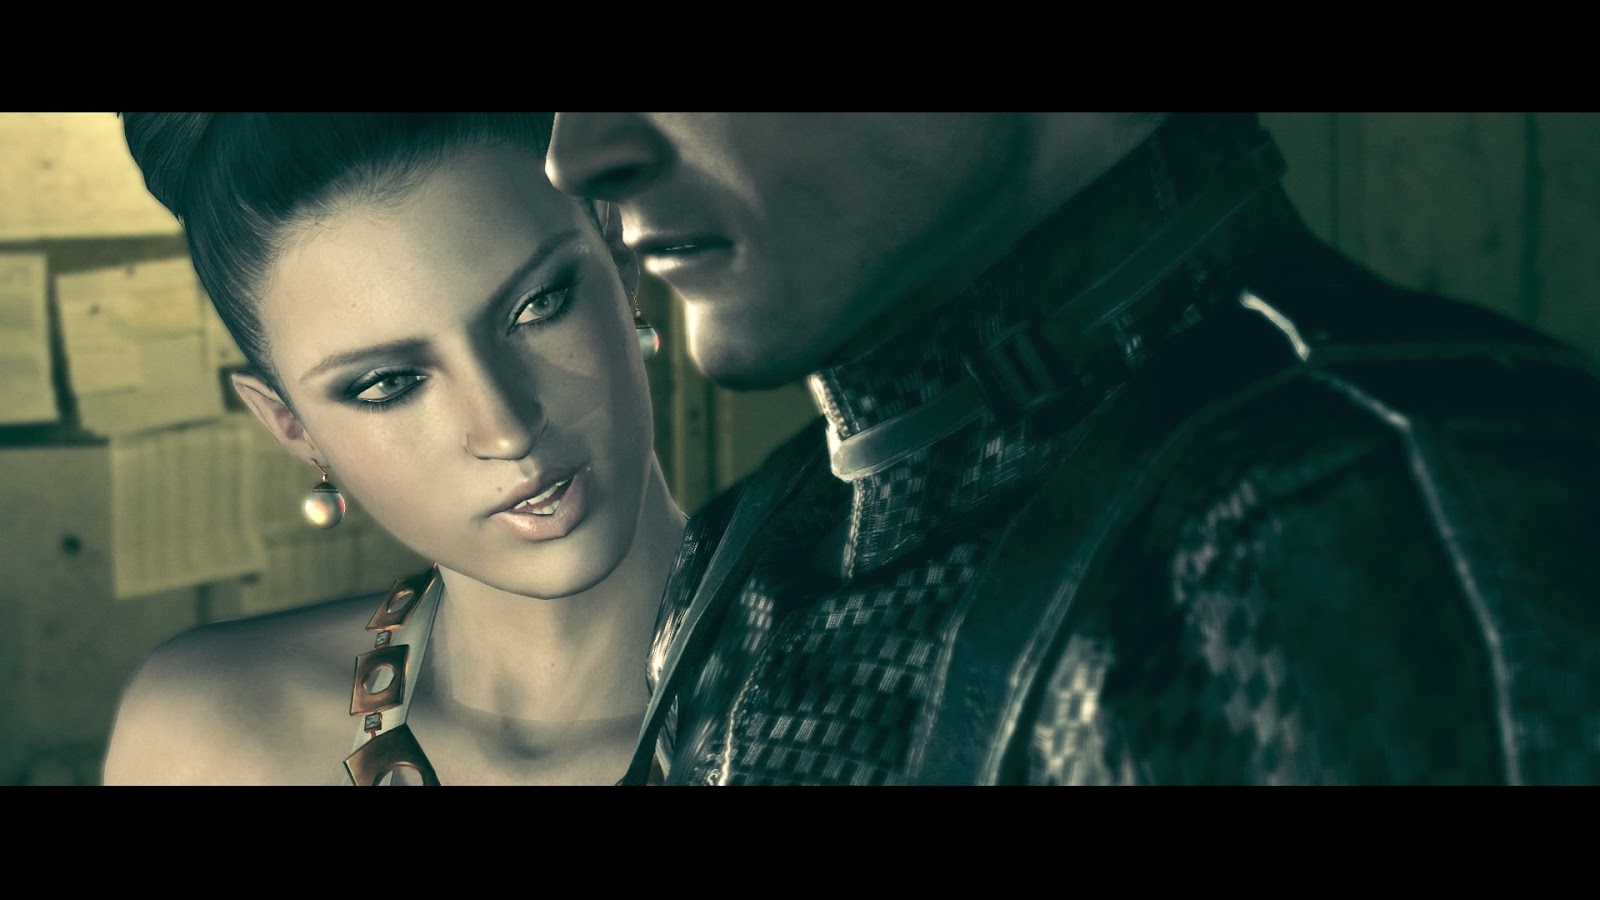 Personagens de Games que eu Pegaria - A Excella gionne do Resident Evil 5